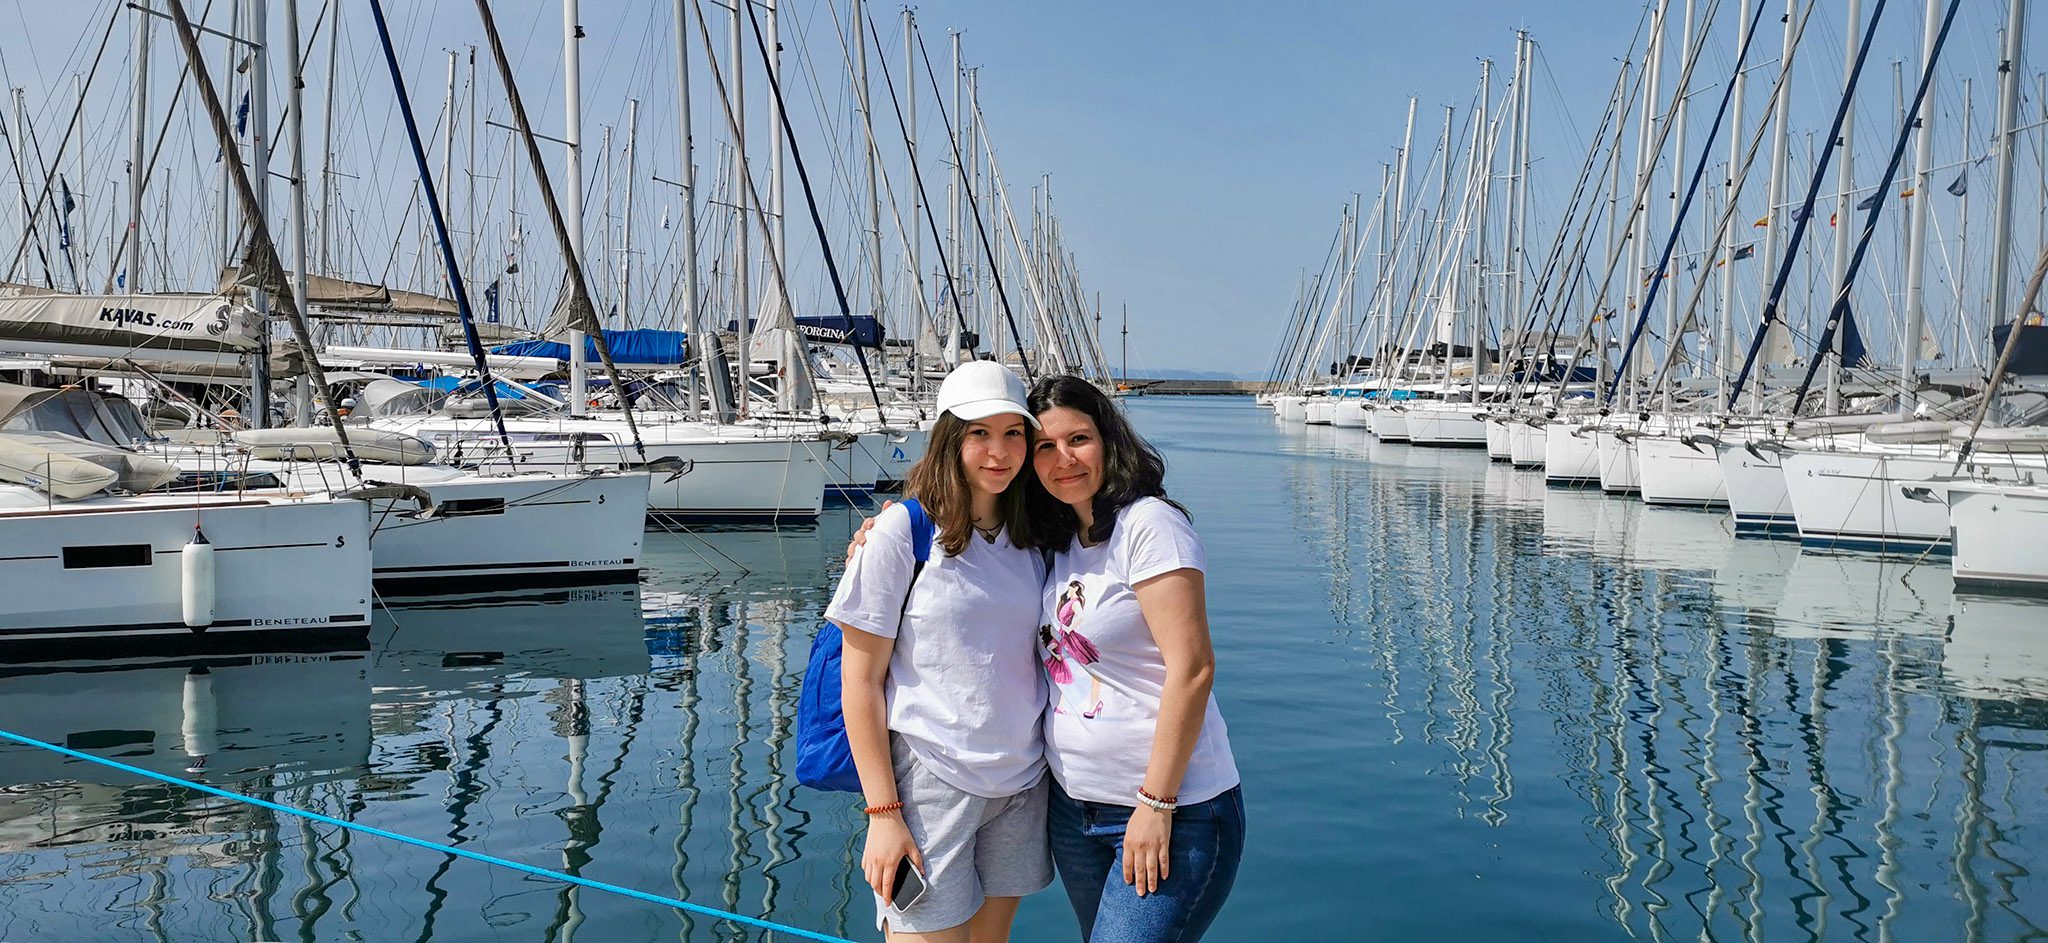 Kateryna și Nataliia în Marina Alimos, în prima zi a expediției. Foto: Marius "Bugetaru" Marcu